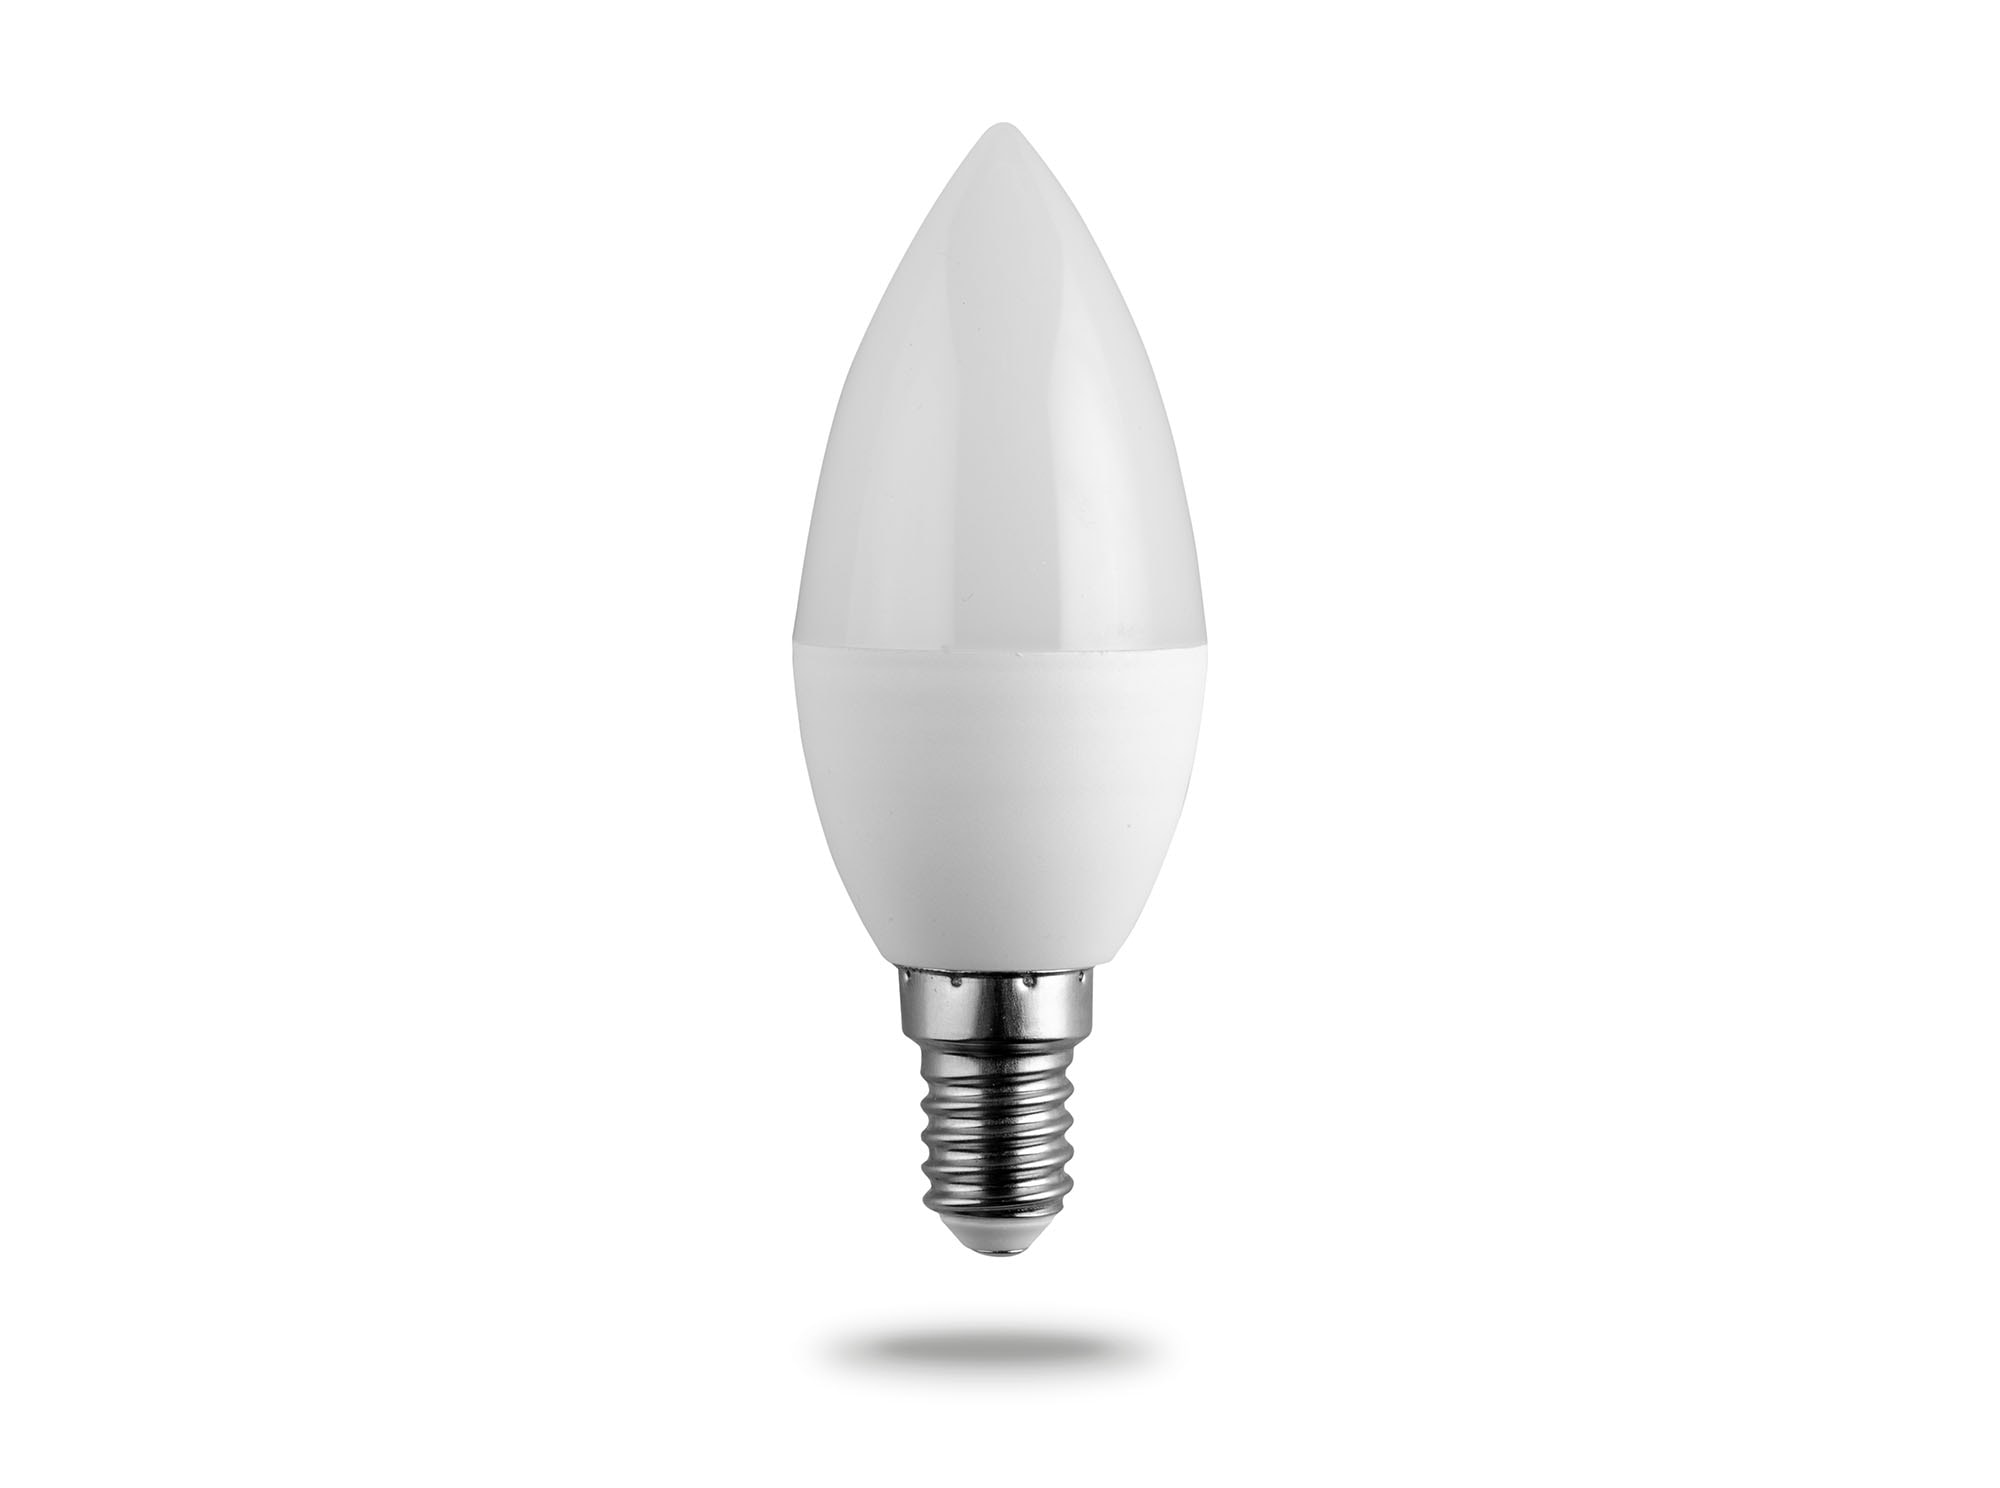 LED Candle Type Bulb